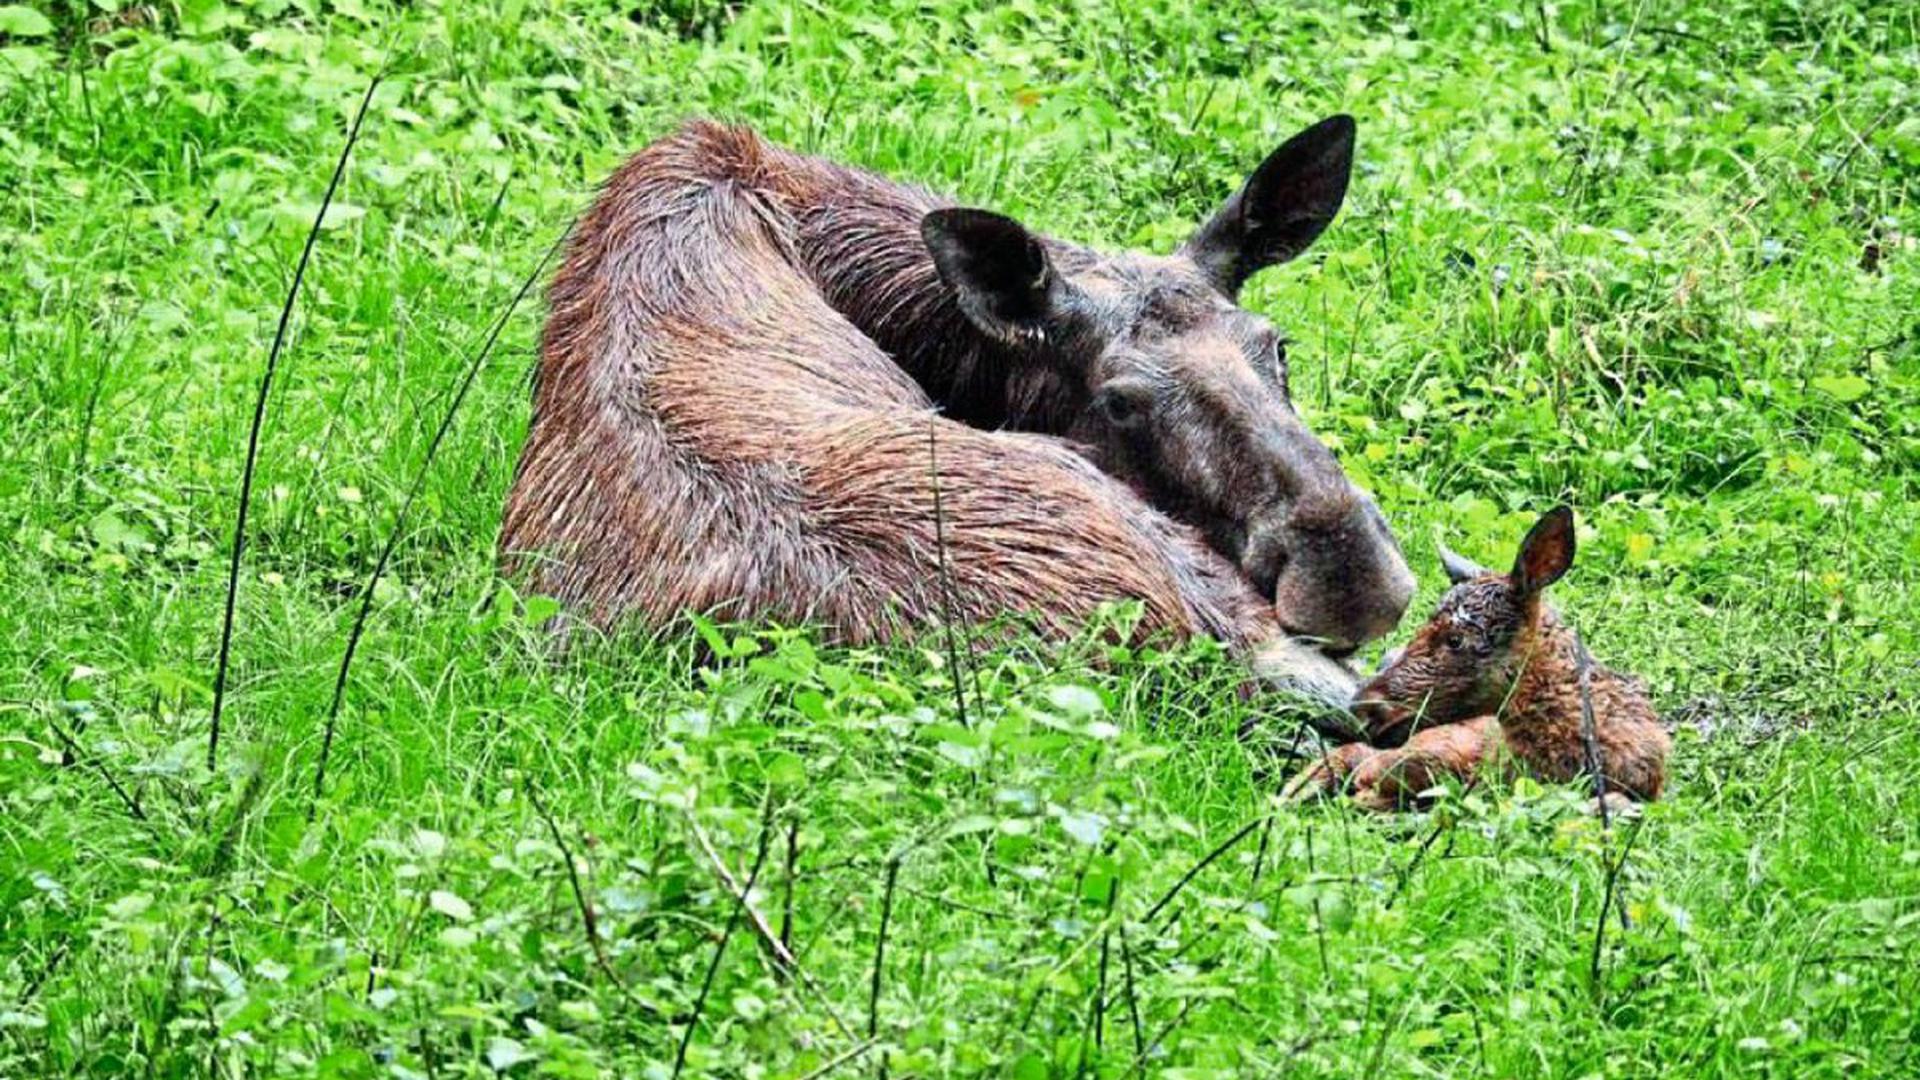 Traurige Nachricht aus dem Tierpark Oberwald in Karlsruhe: Das kleine Elch-Baby, das erst vor wenigen Tagen geboren wurde, ist tot.